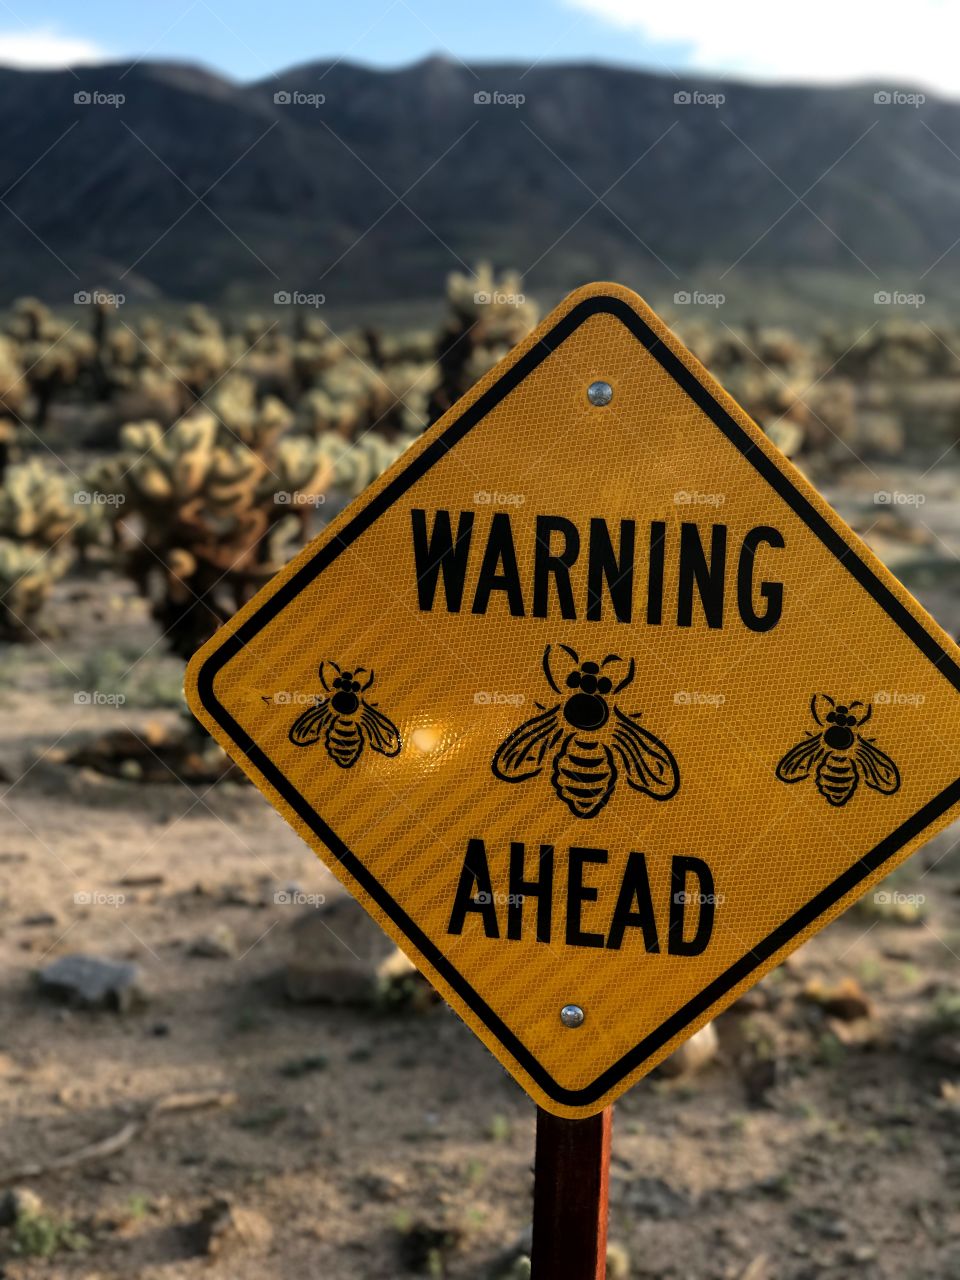 Warning Bees Ahead 